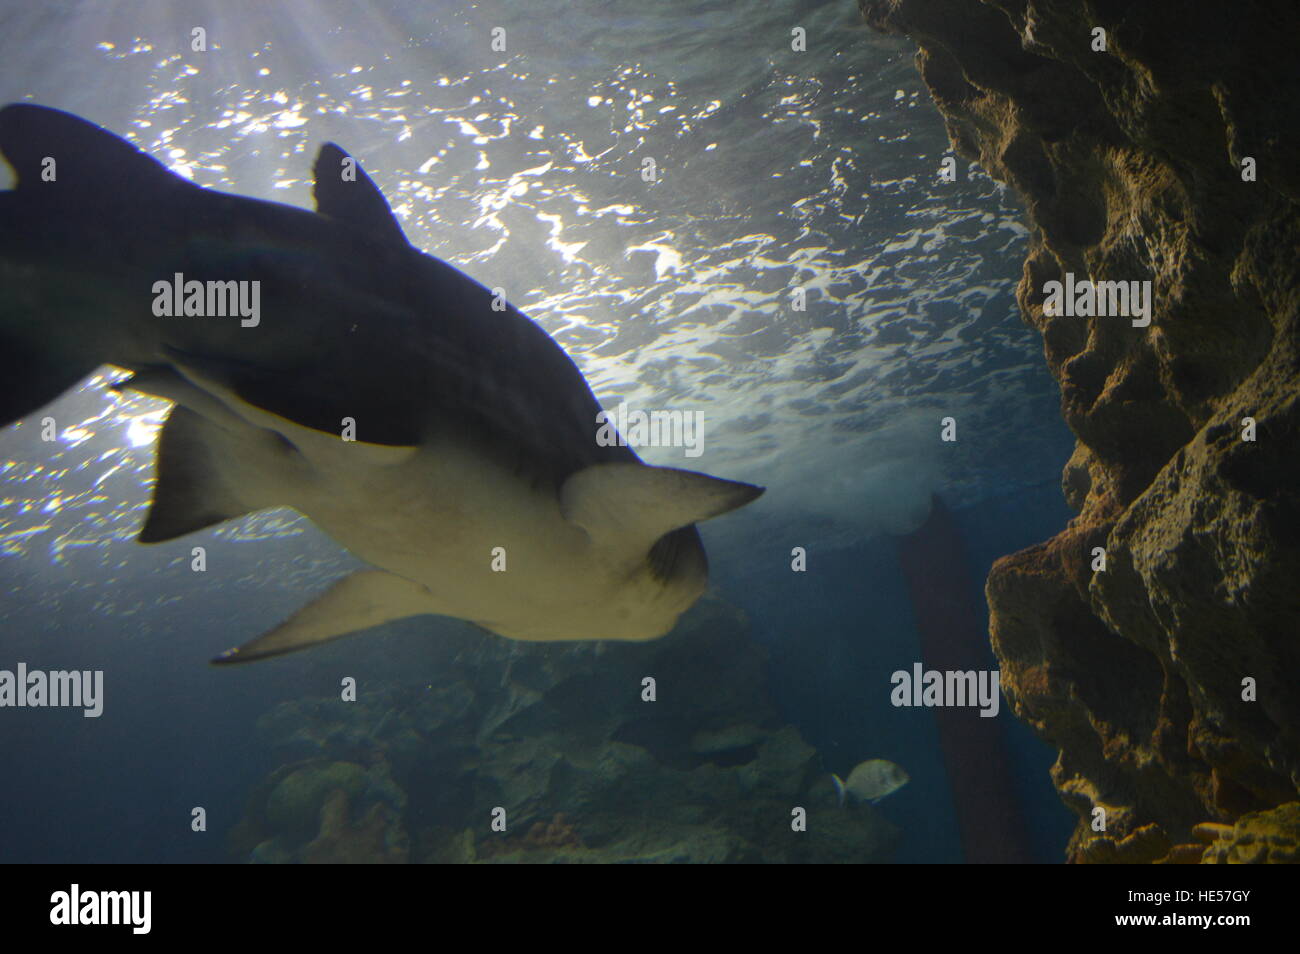 Istanbul Sea Life Aquarium Stock Photo